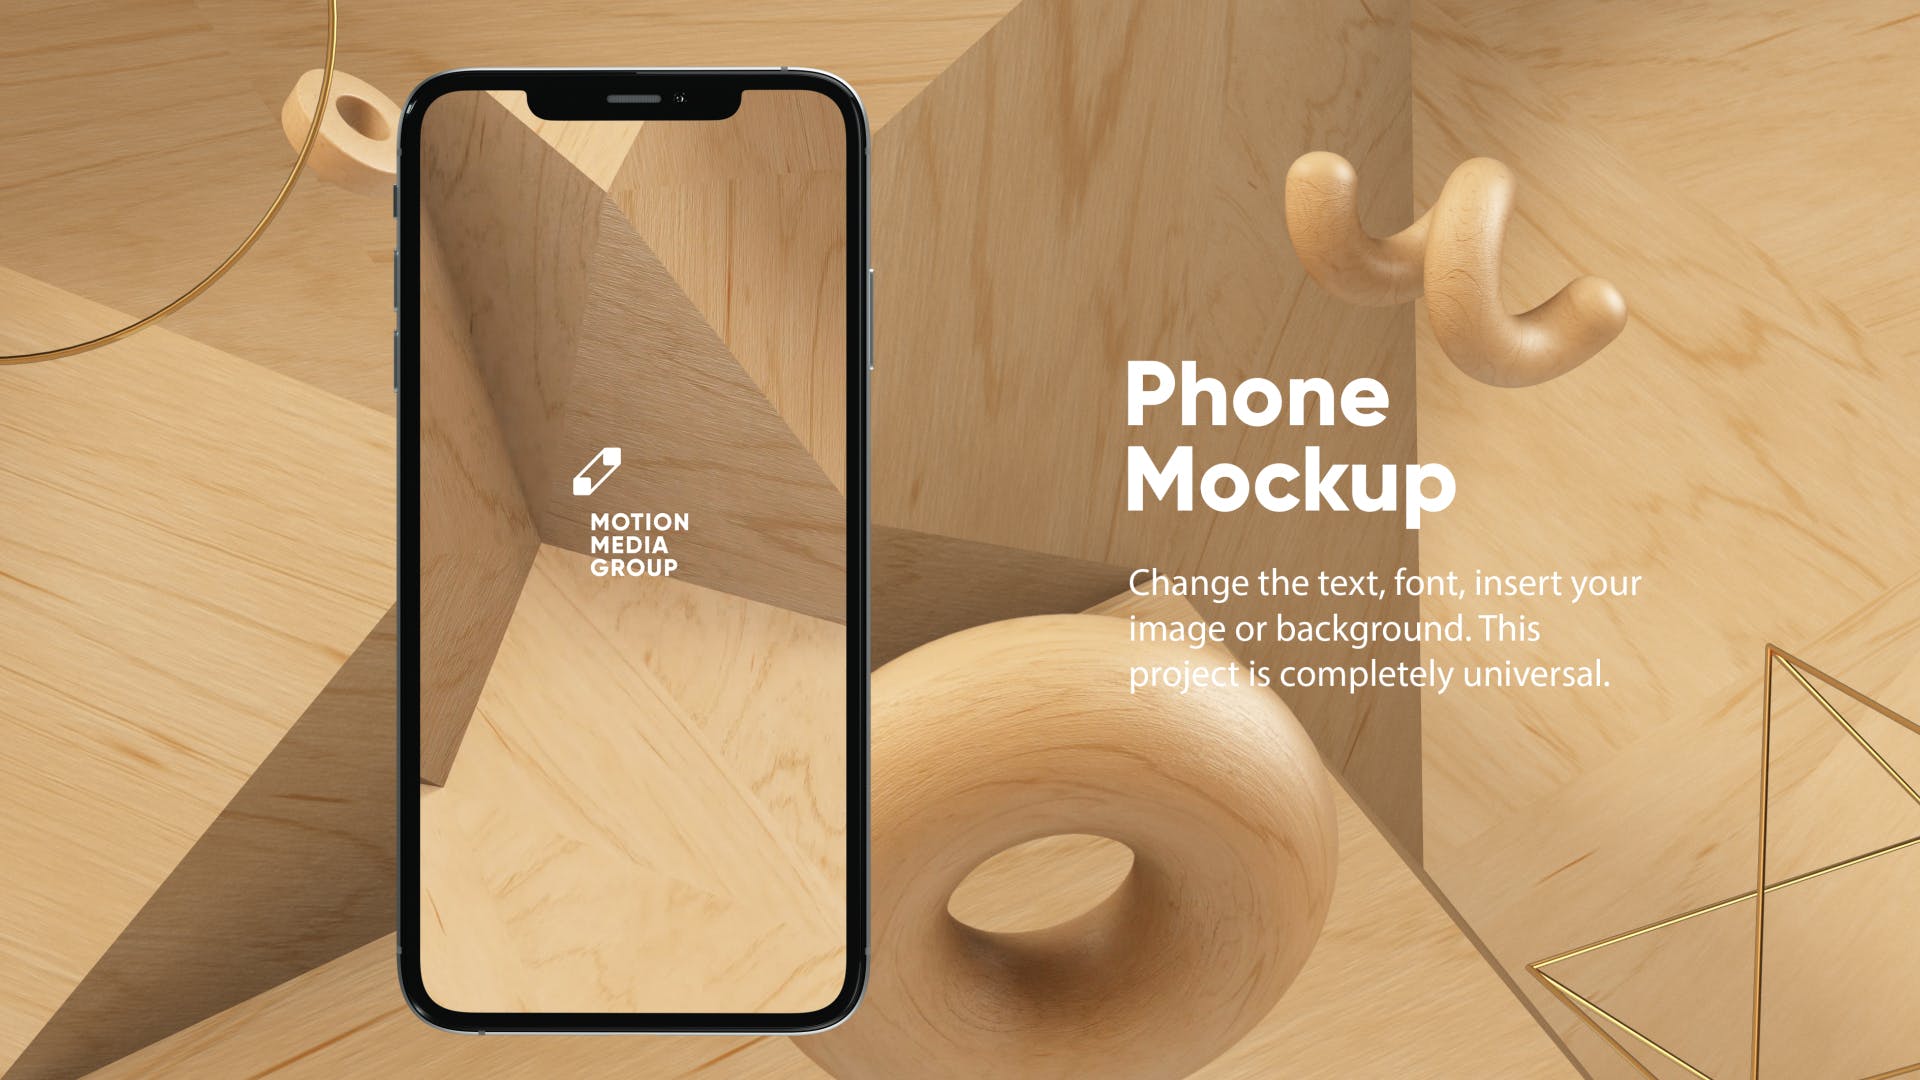 优雅时尚风格3D立体风格iPhone手机屏幕预览蚂蚁素材精选样机 10 Light Phone Mockups插图(3)